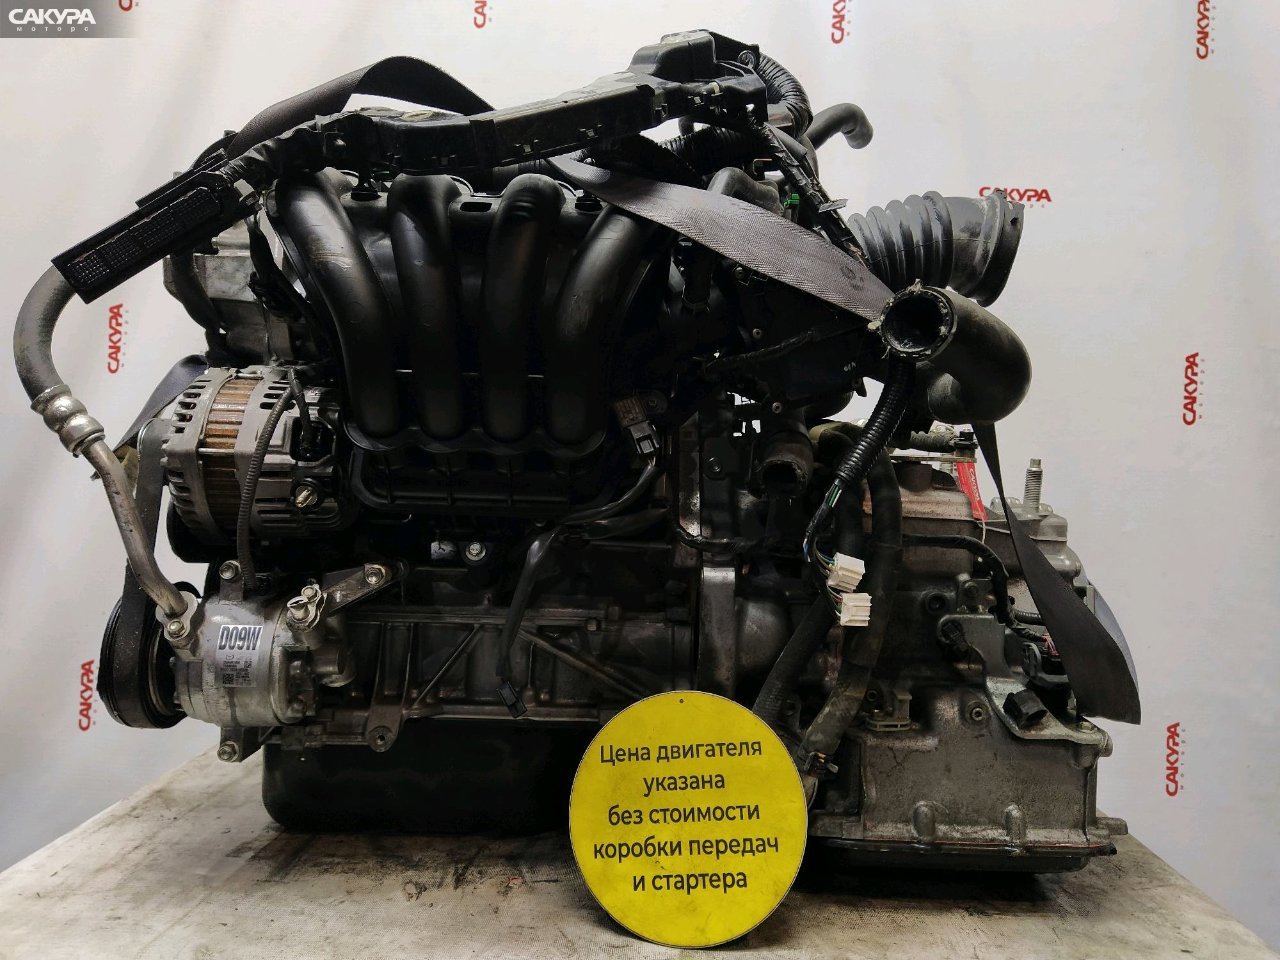 Двигатель Mazda Demio DJ3FS P3-VPS: купить в Сакура Красноярск.